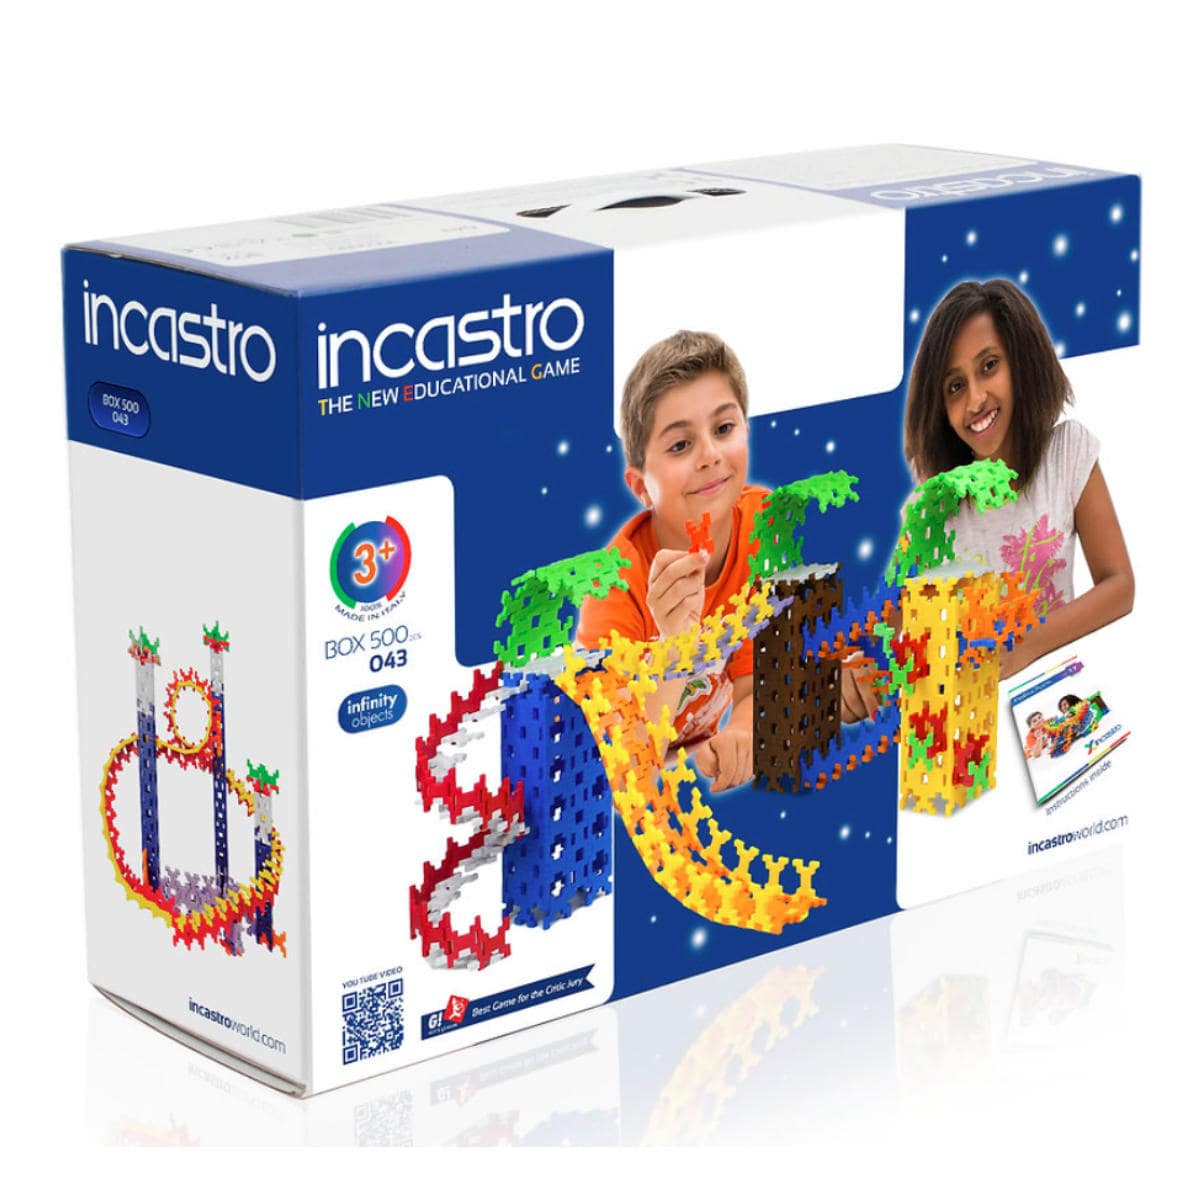 incastro】インカストロ BOX500 (500ピース) イタリア生まれの知育ブロック 知育玩具 B-